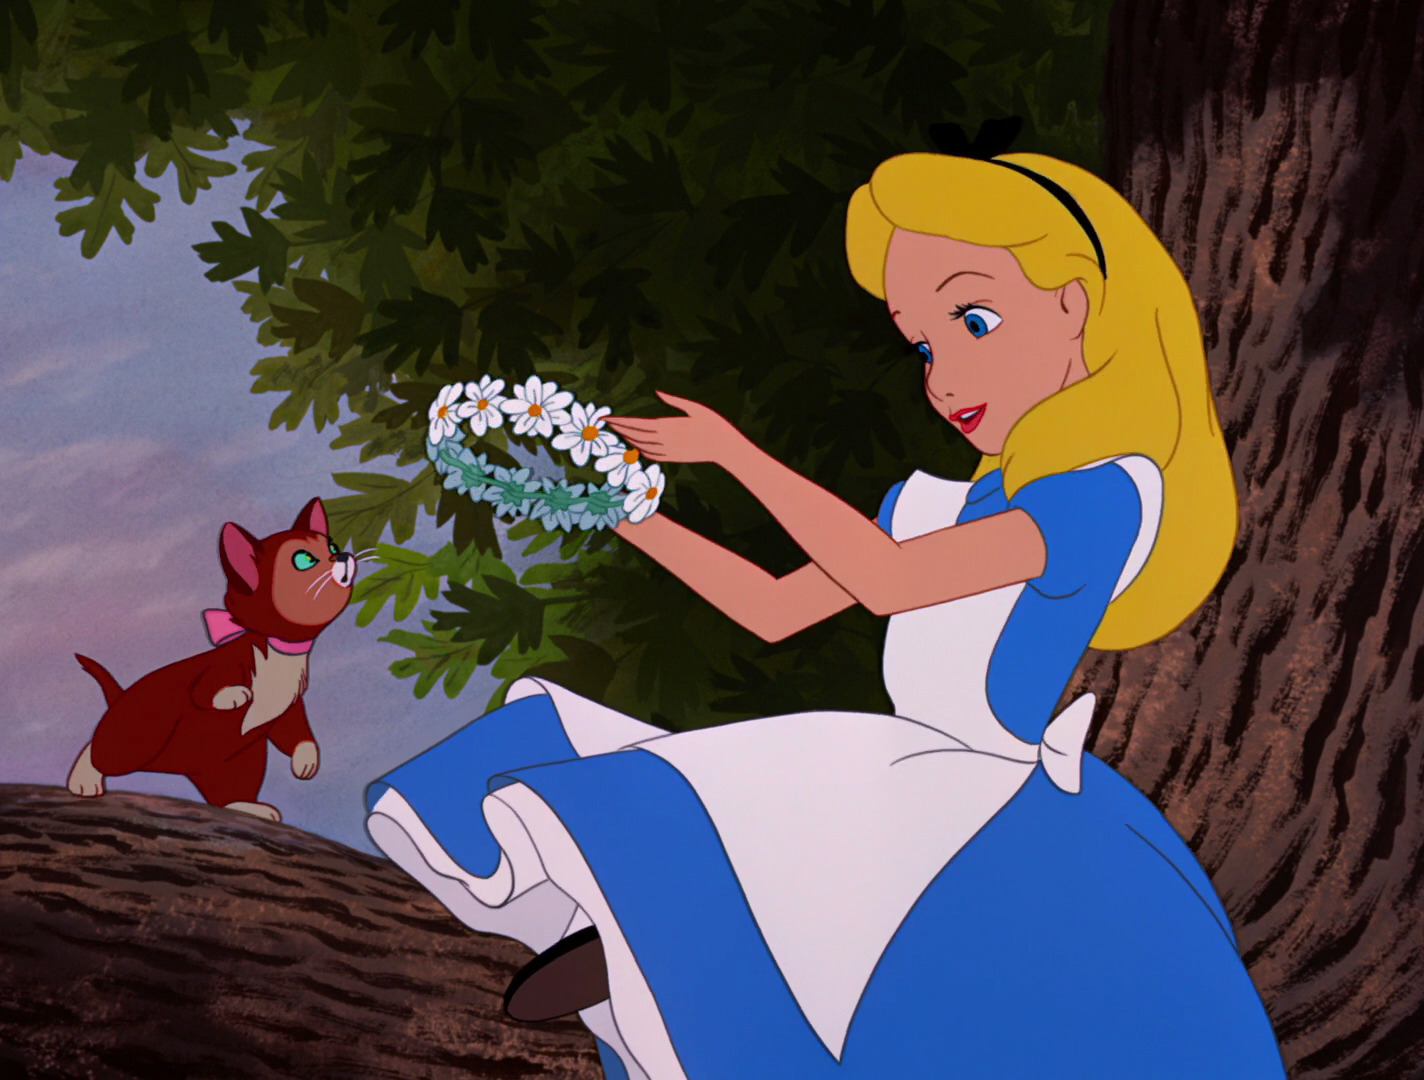 Alice In Wonderland 1xbet